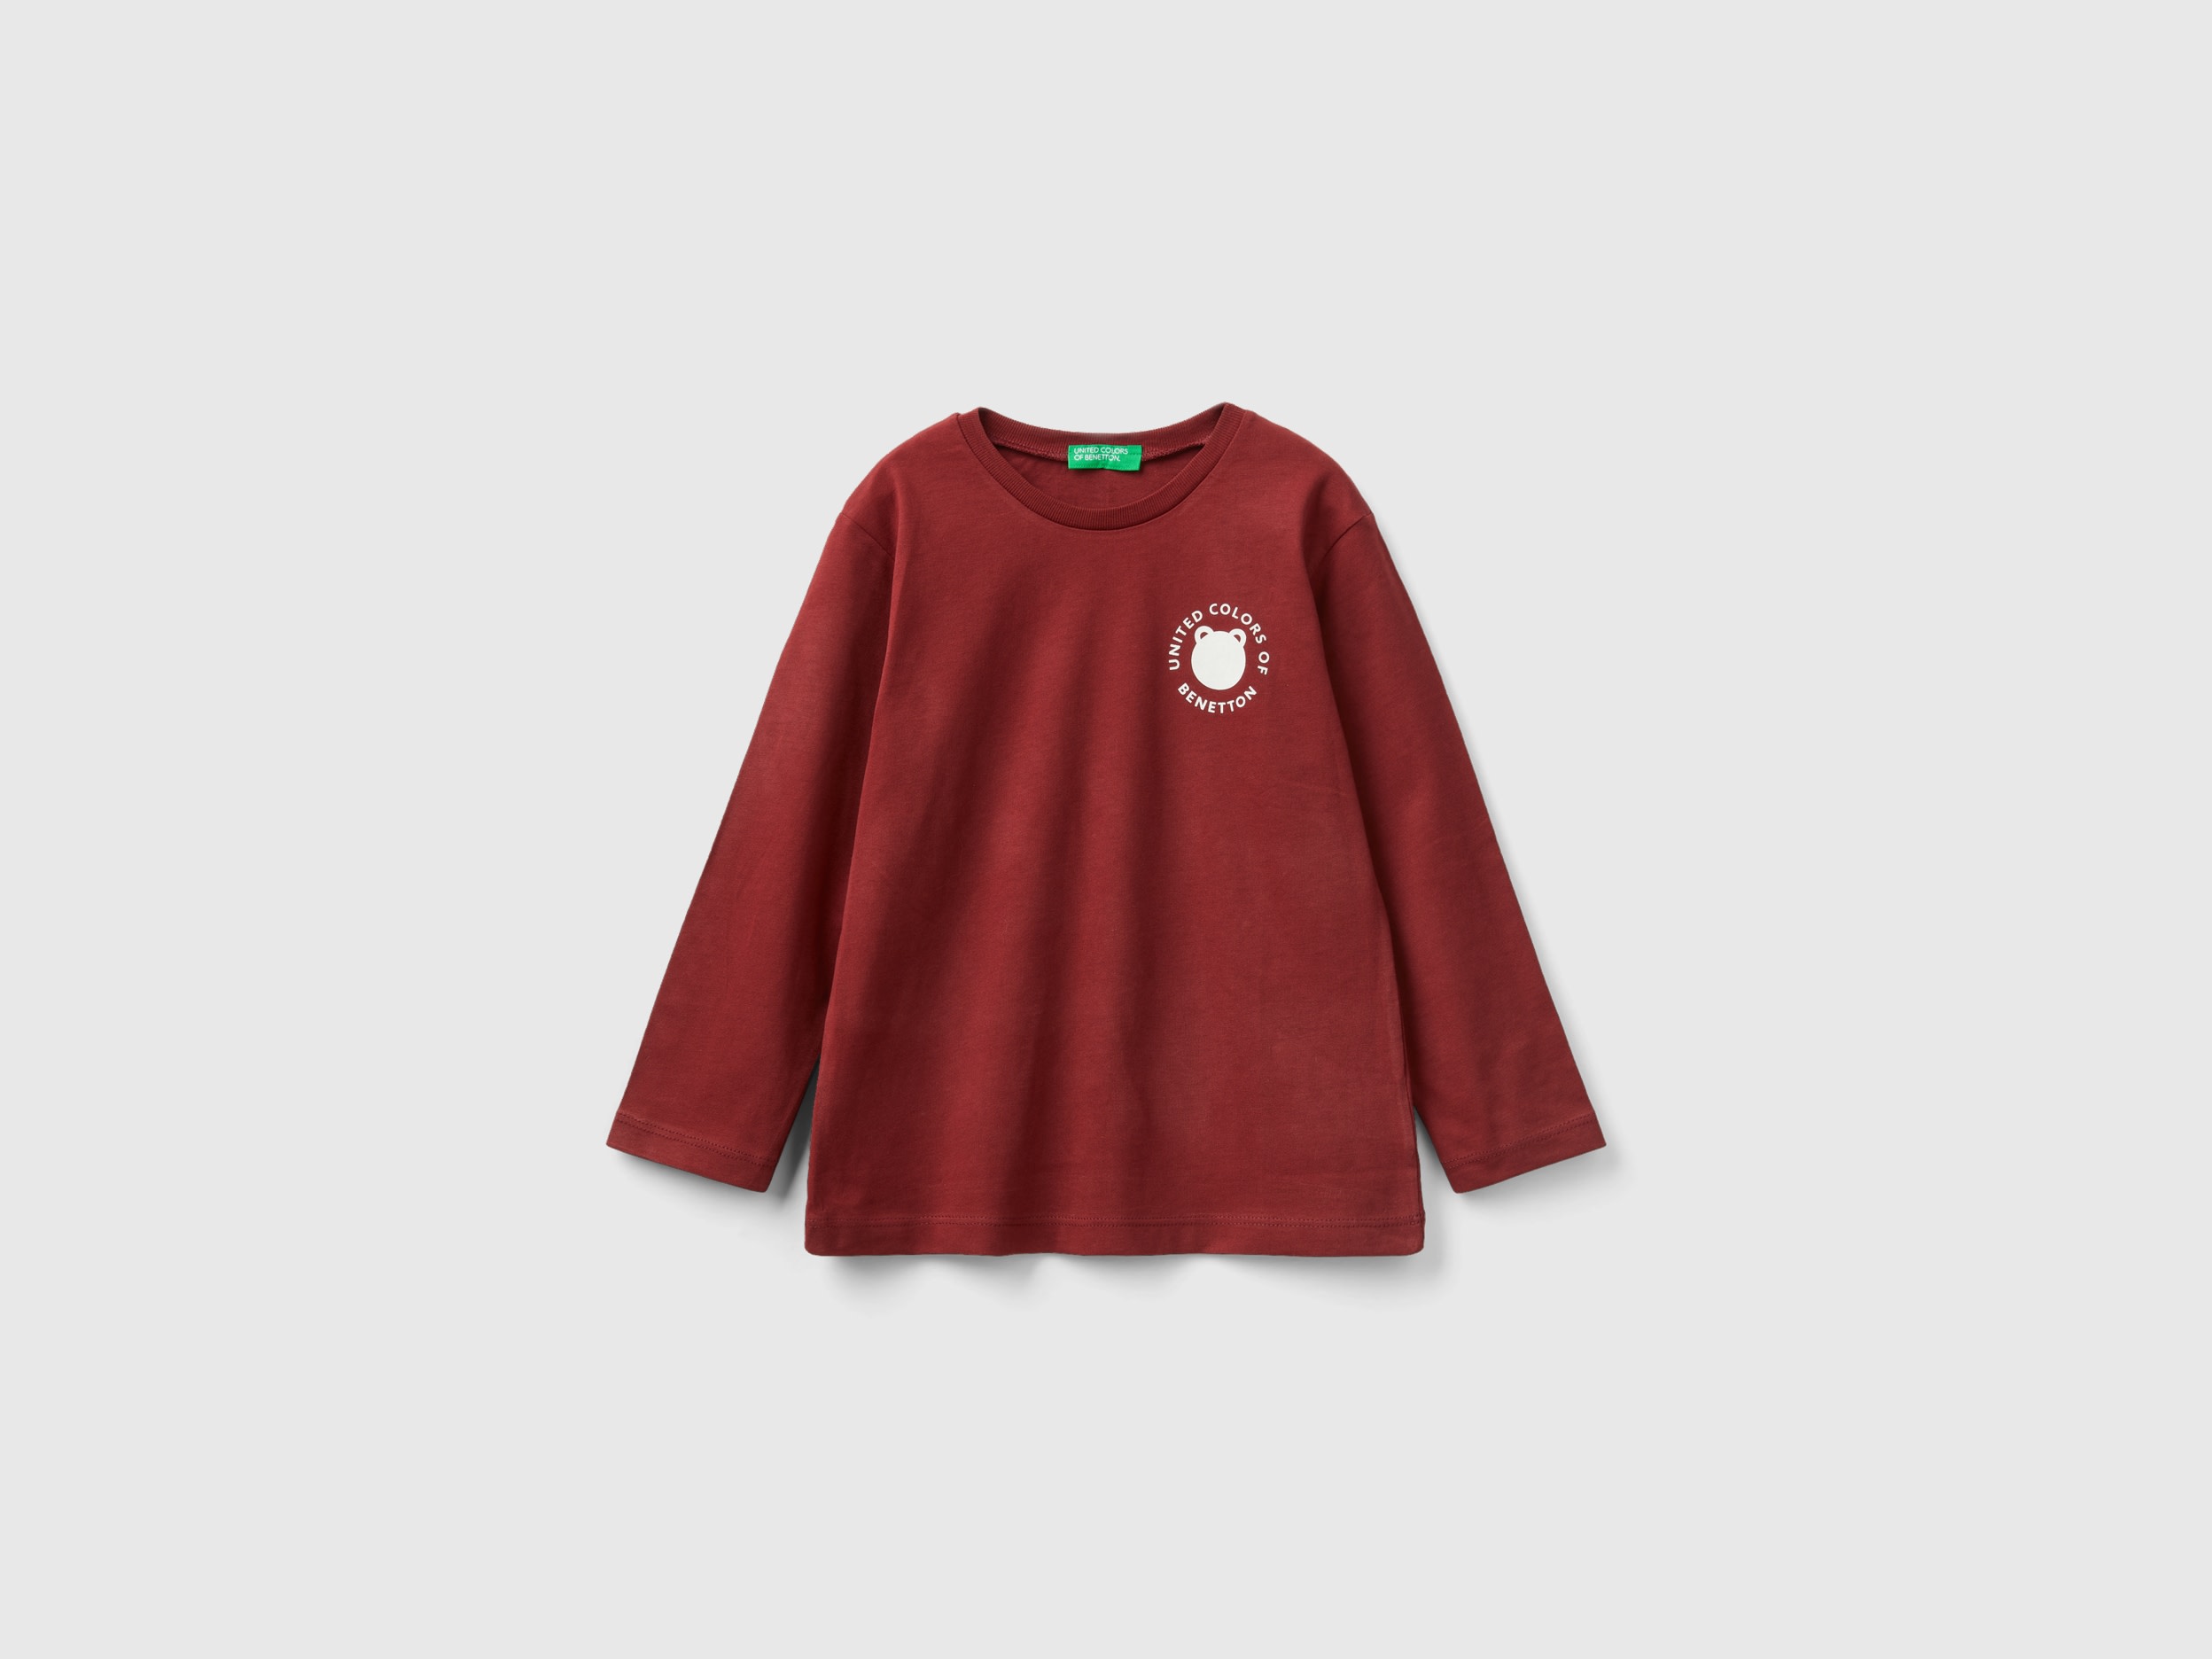 Benetton, Crew Neck T-shirt In Warm Organic Cotton, size 12-18, Burgundy, Kids